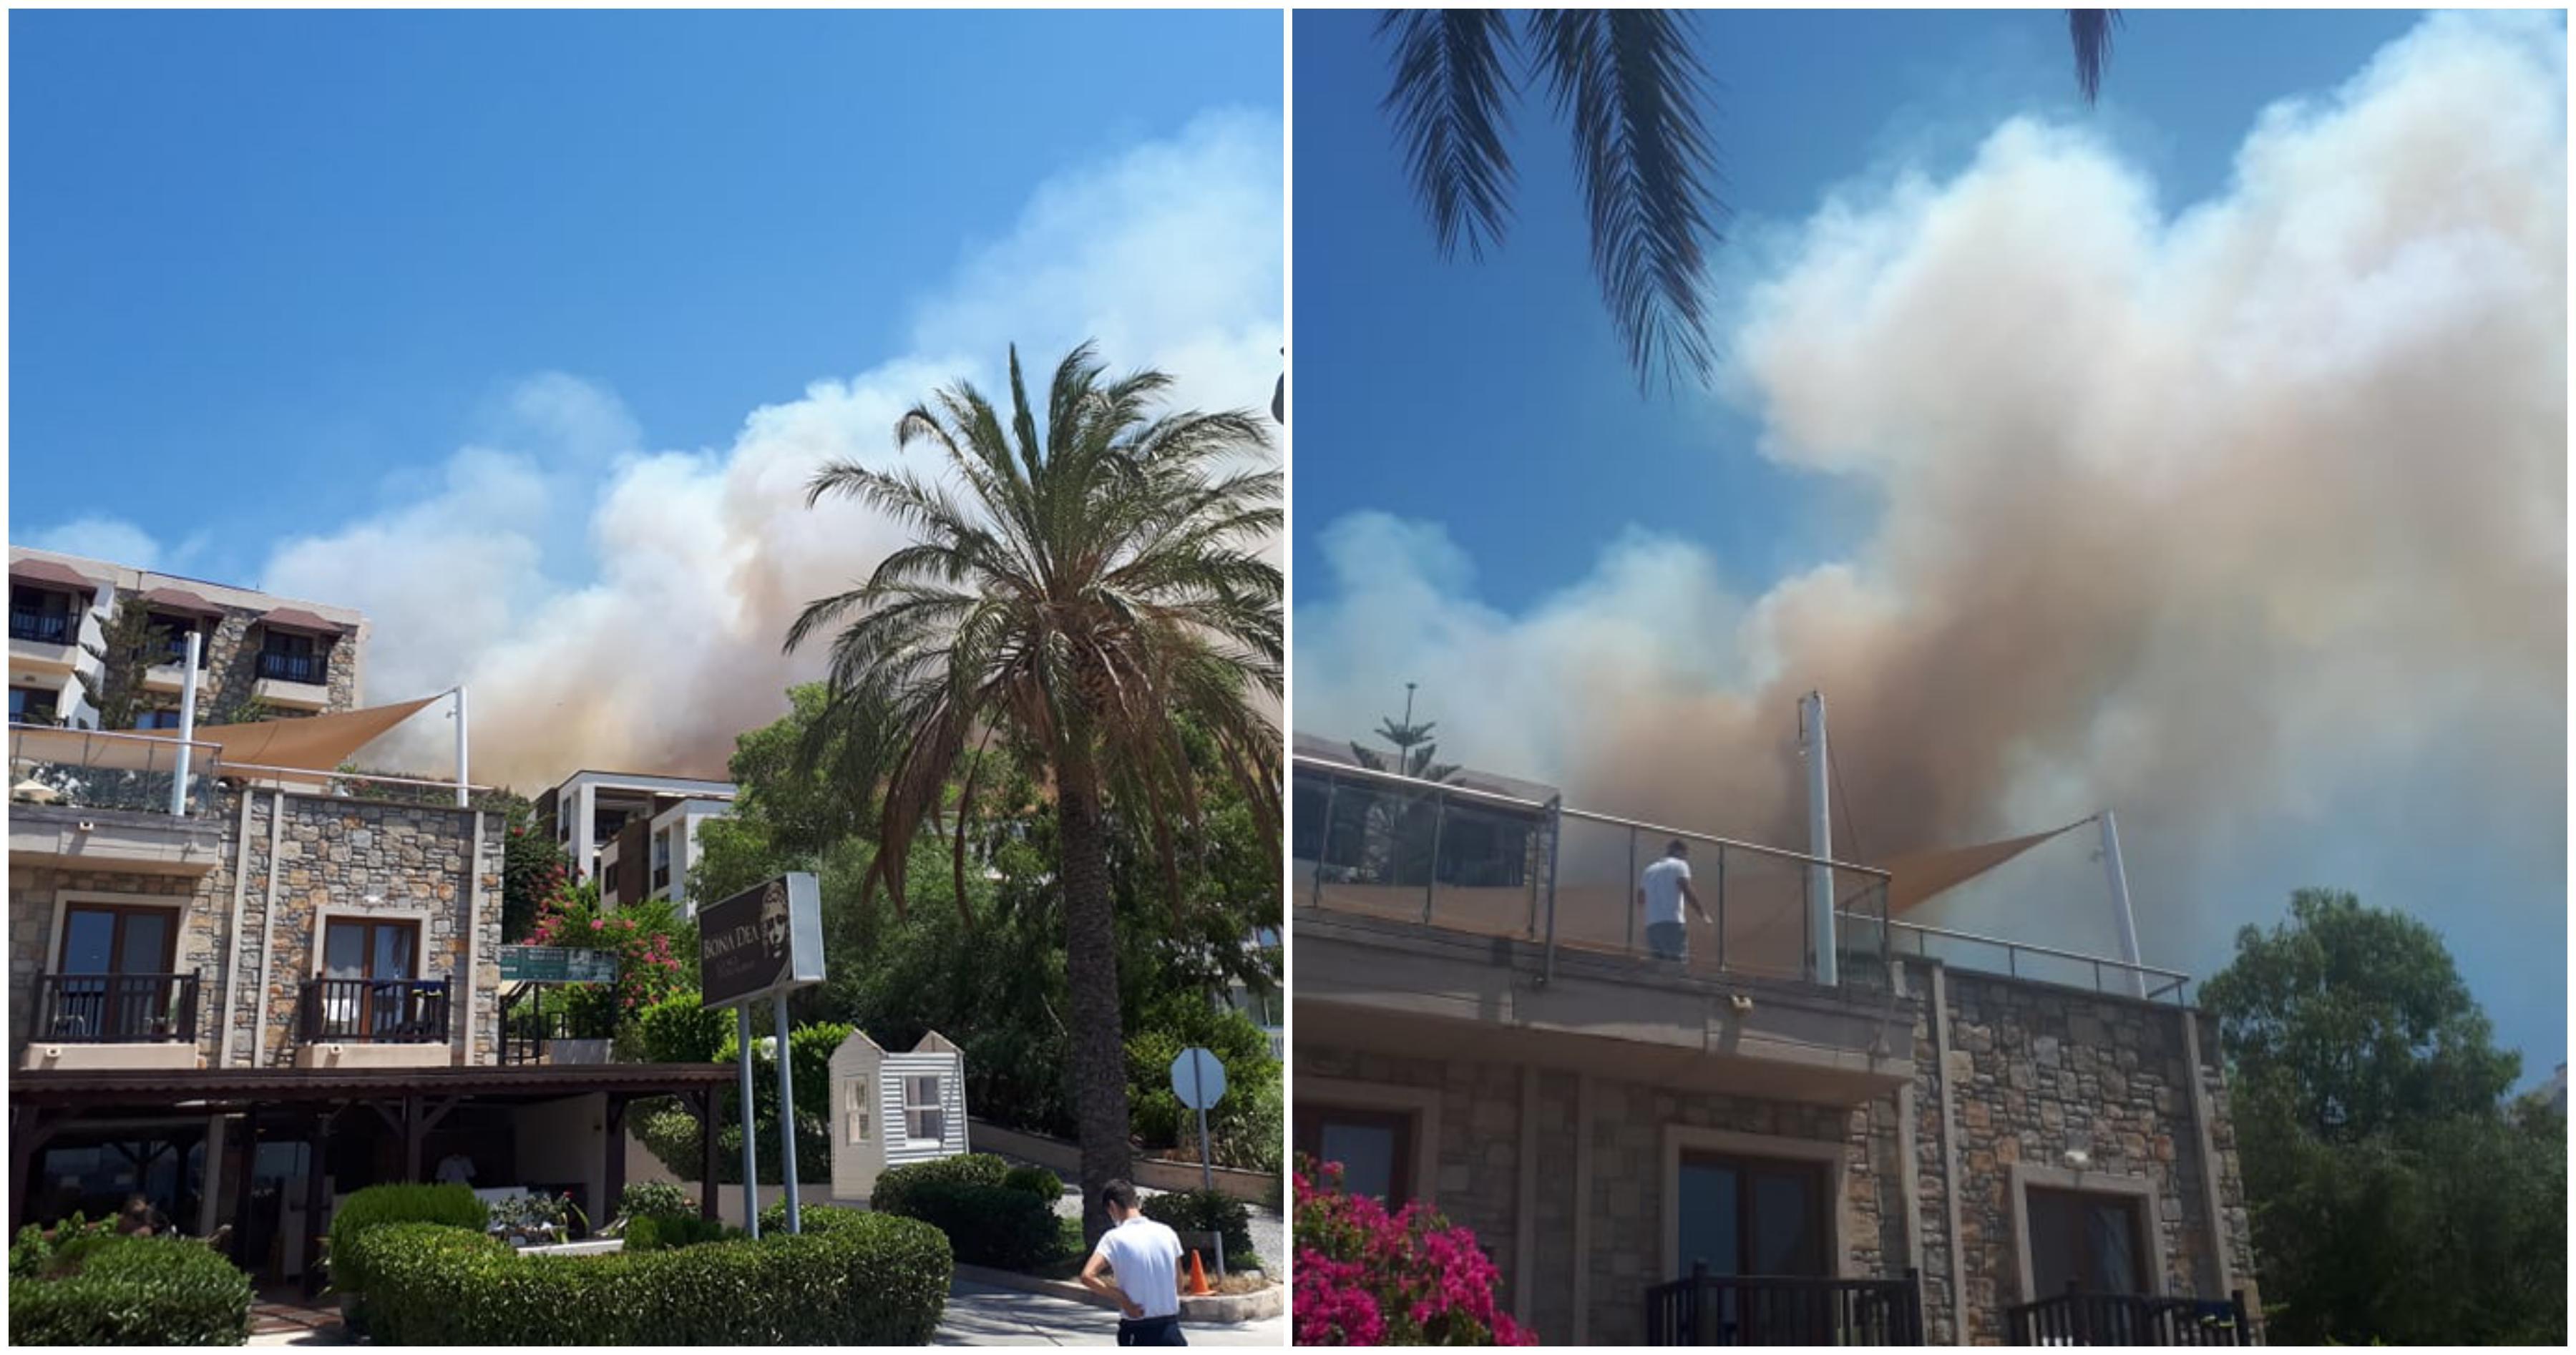 Drama bh. turista u Bodrumu u Turskoj: Požar je buknuo iznad našeg hotela, uspjeli smo pokupiti samo dokumente i pobjeći